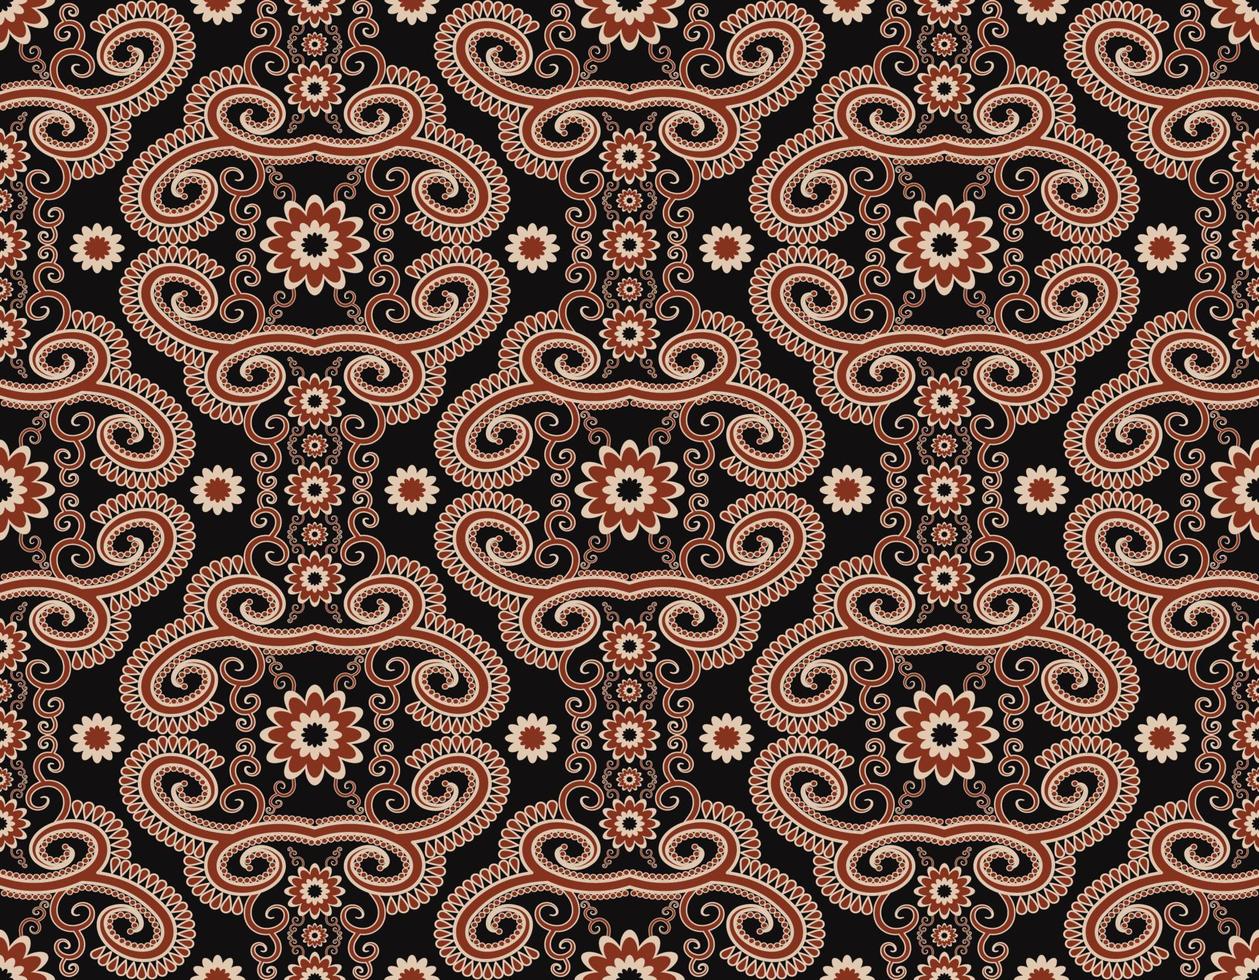 abstract floral vorm vintage rode kleur naadloze patroon op zwarte achtergrond. gebruik voor stof, textiel, interieurdecoratie-elementen, stoffering, verpakking. vector